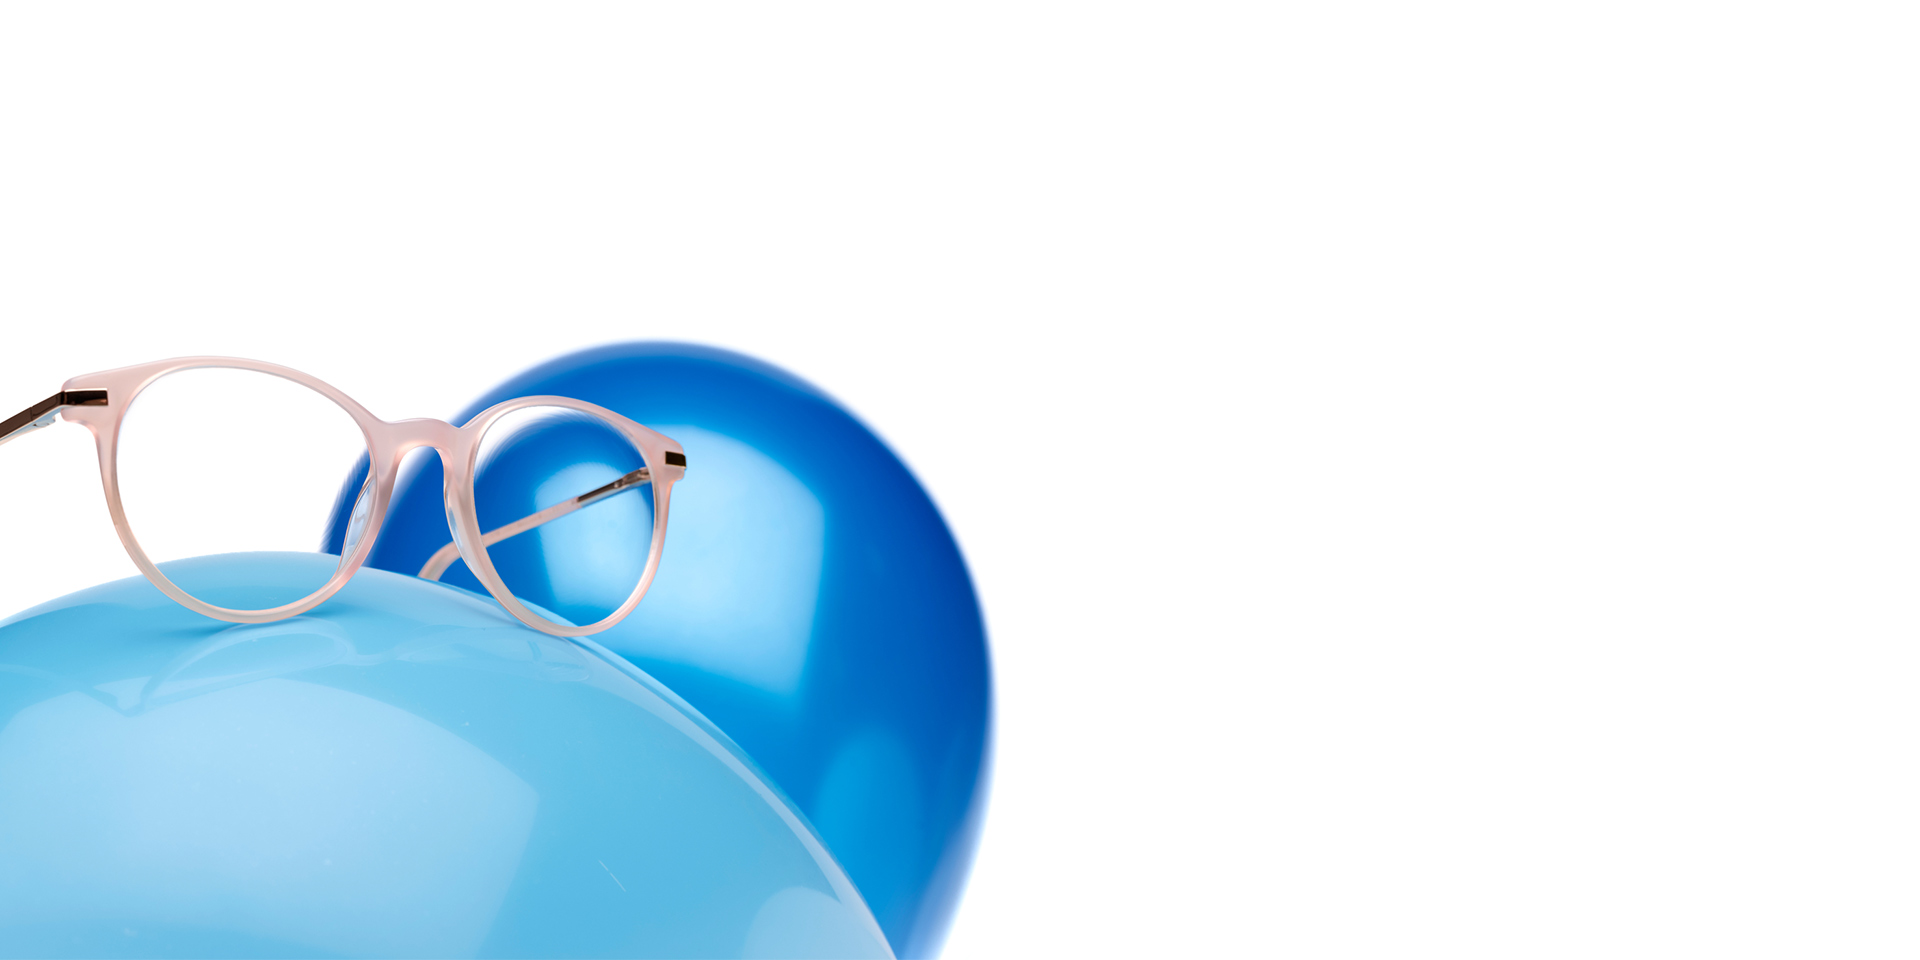 Les verres ZEISS MyoCare dans une monture beige-rosée sont présentées sur un ballon bleu clair. Un autre ballon bleu légèrement plus foncé est visible en arrière-plan.